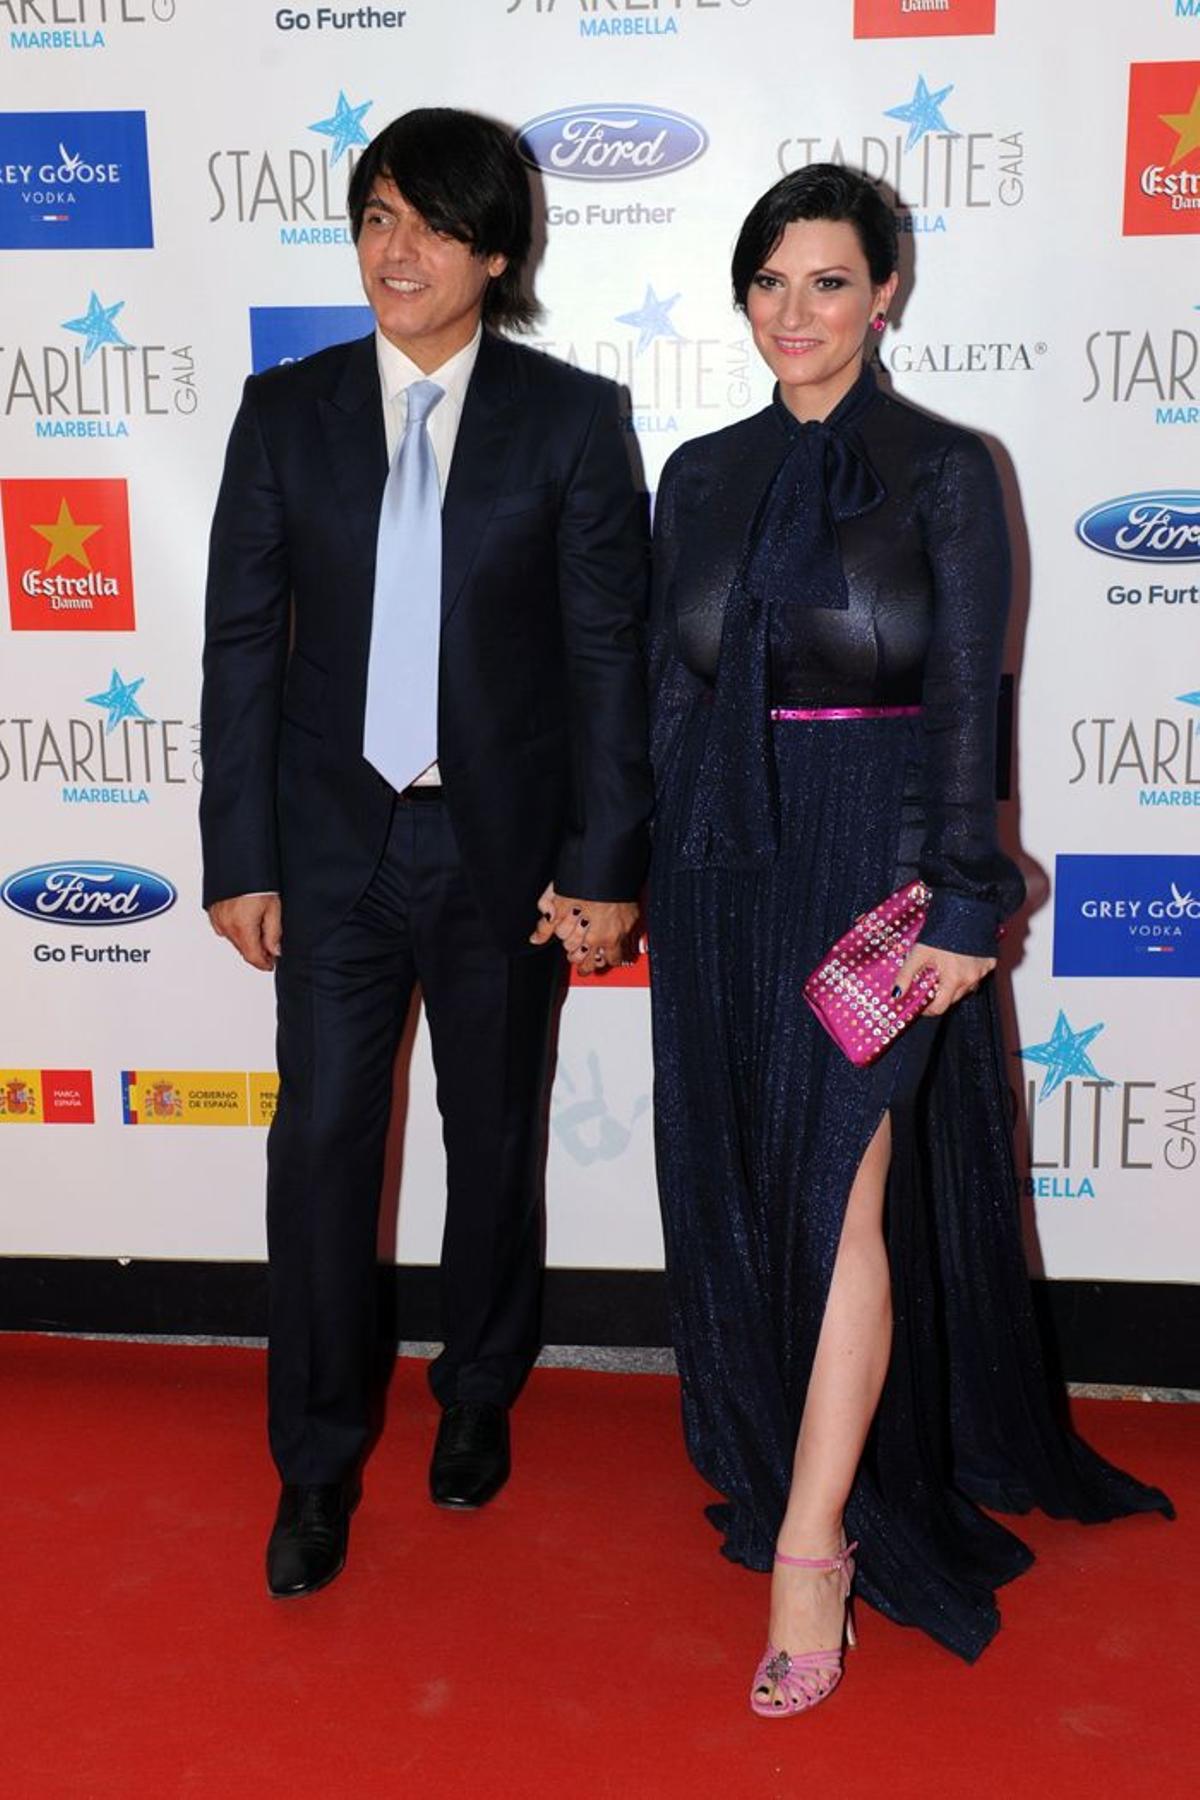 Laura Pausini y su marido en Starlite Marbella